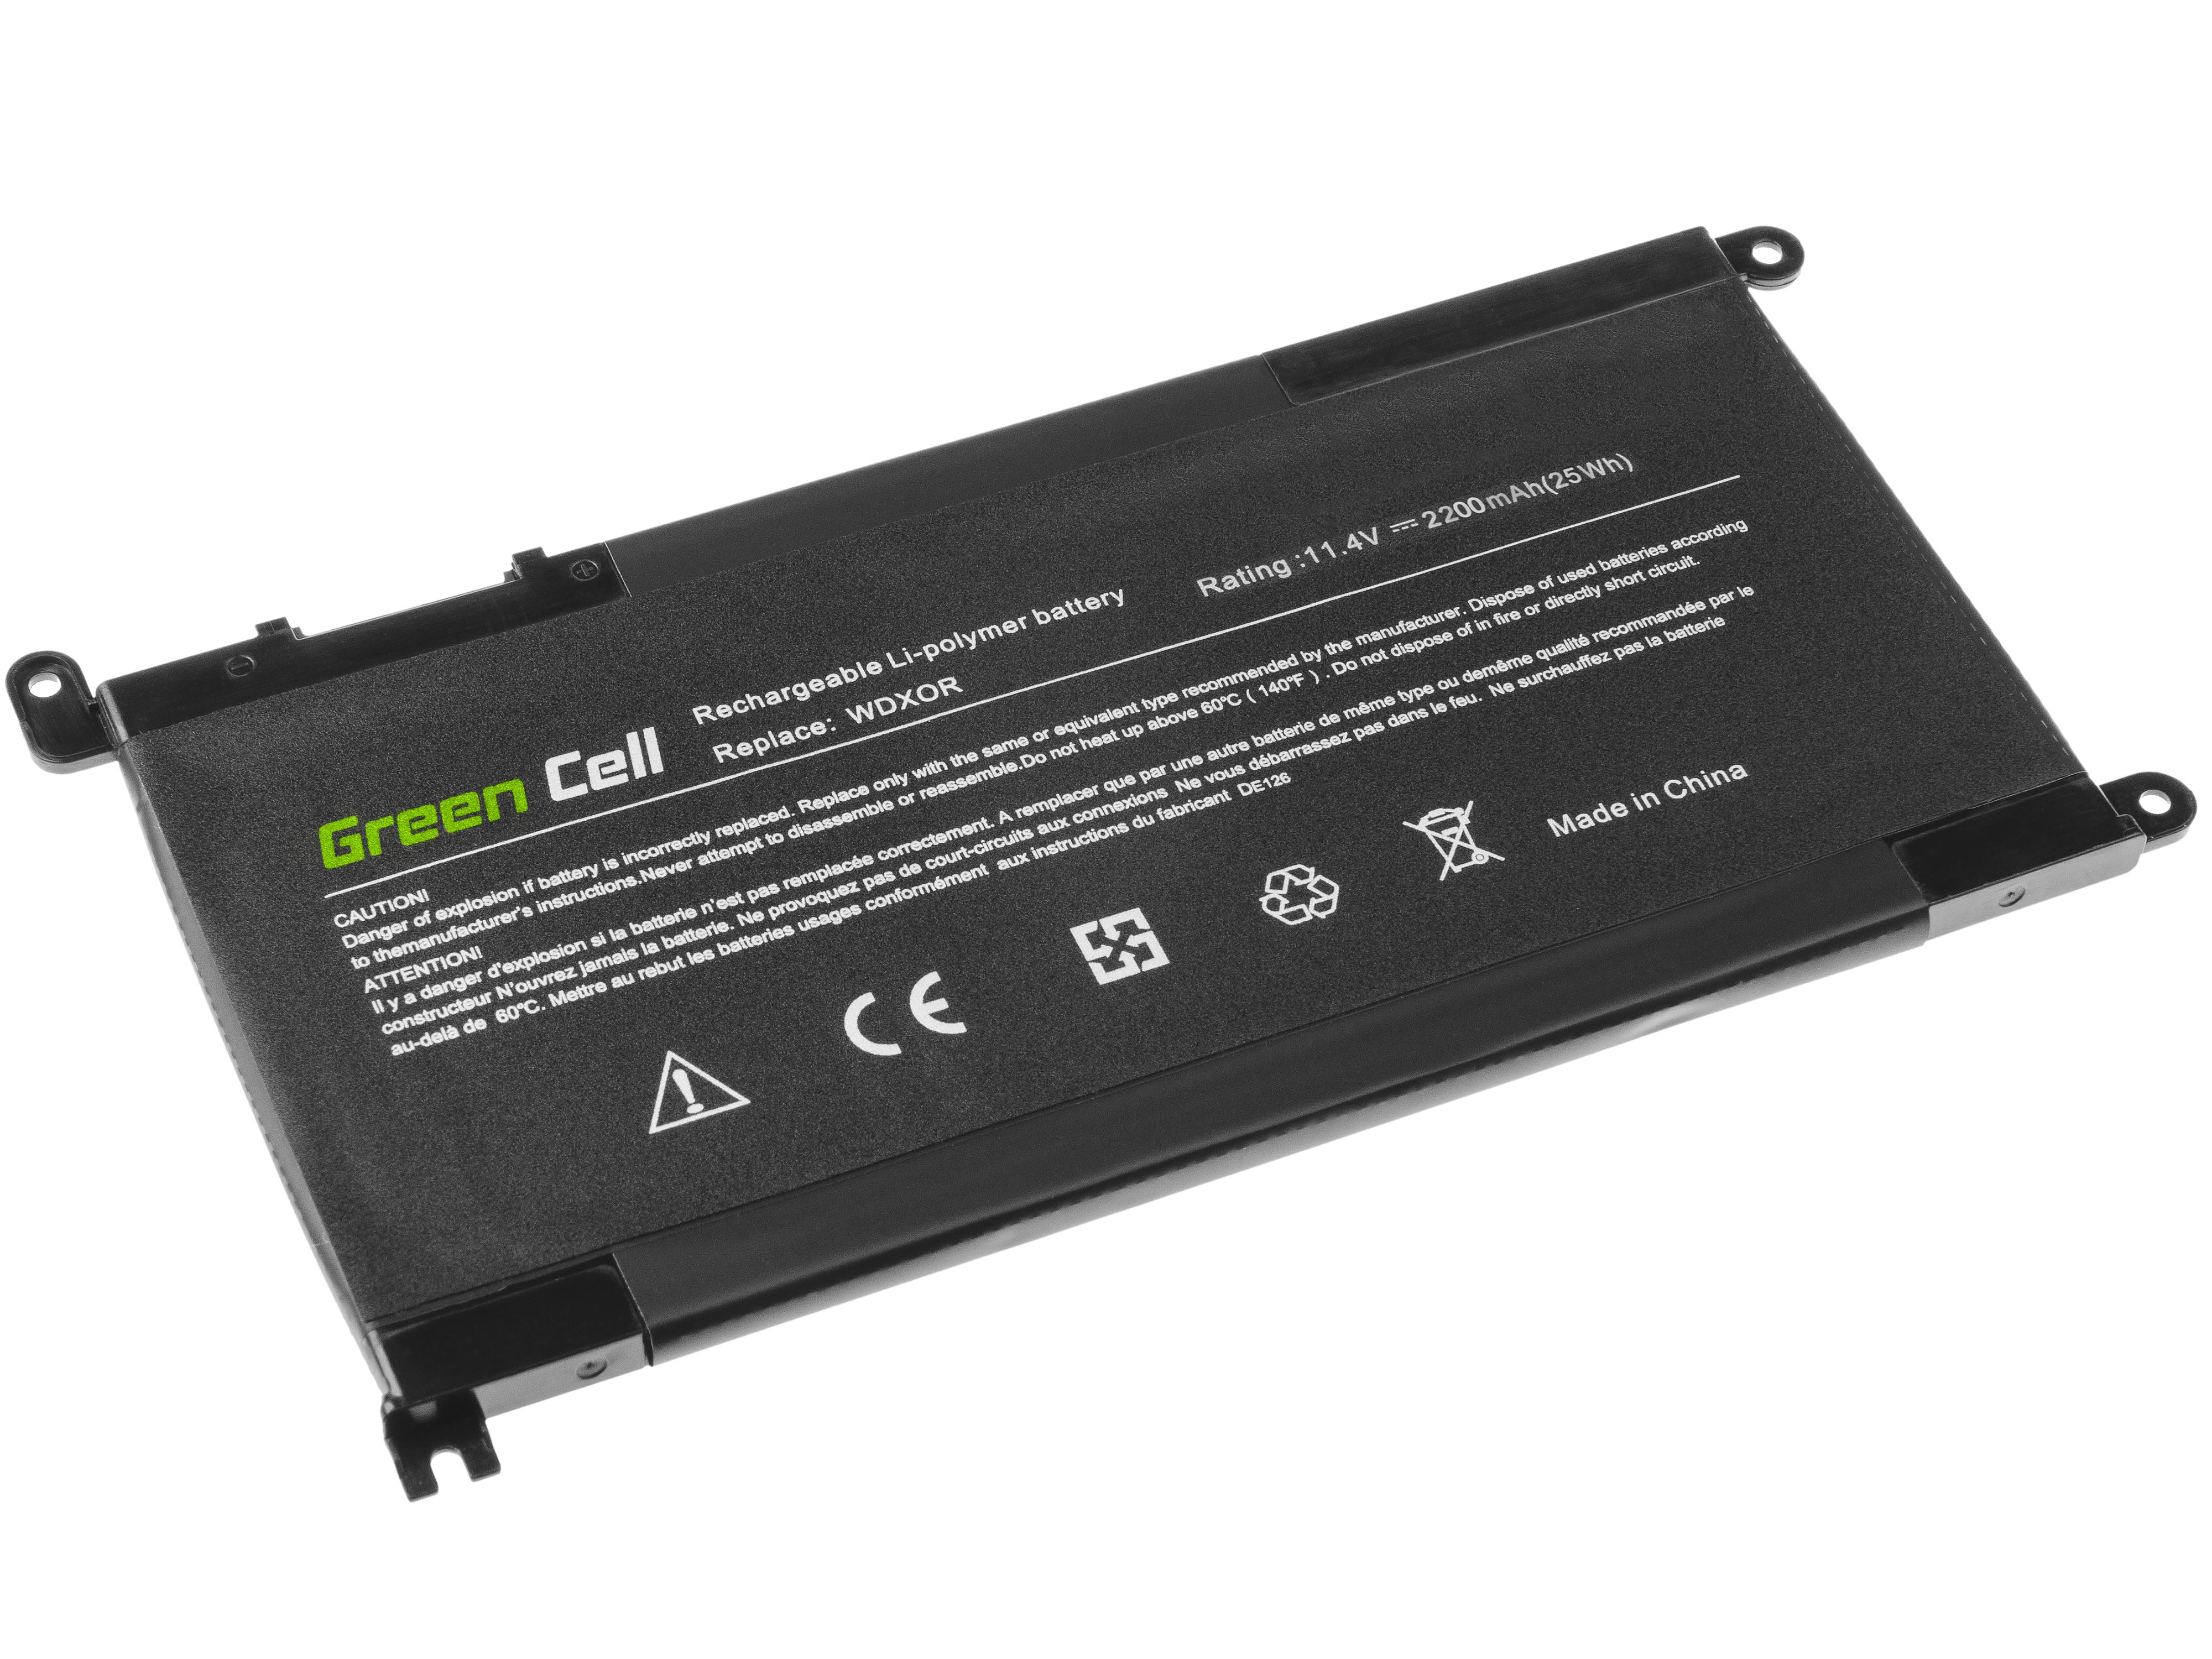 Green Cell laptopbatteri til WDX0R WDXOR Dell Inspiron 13 5368 5378 5379 14